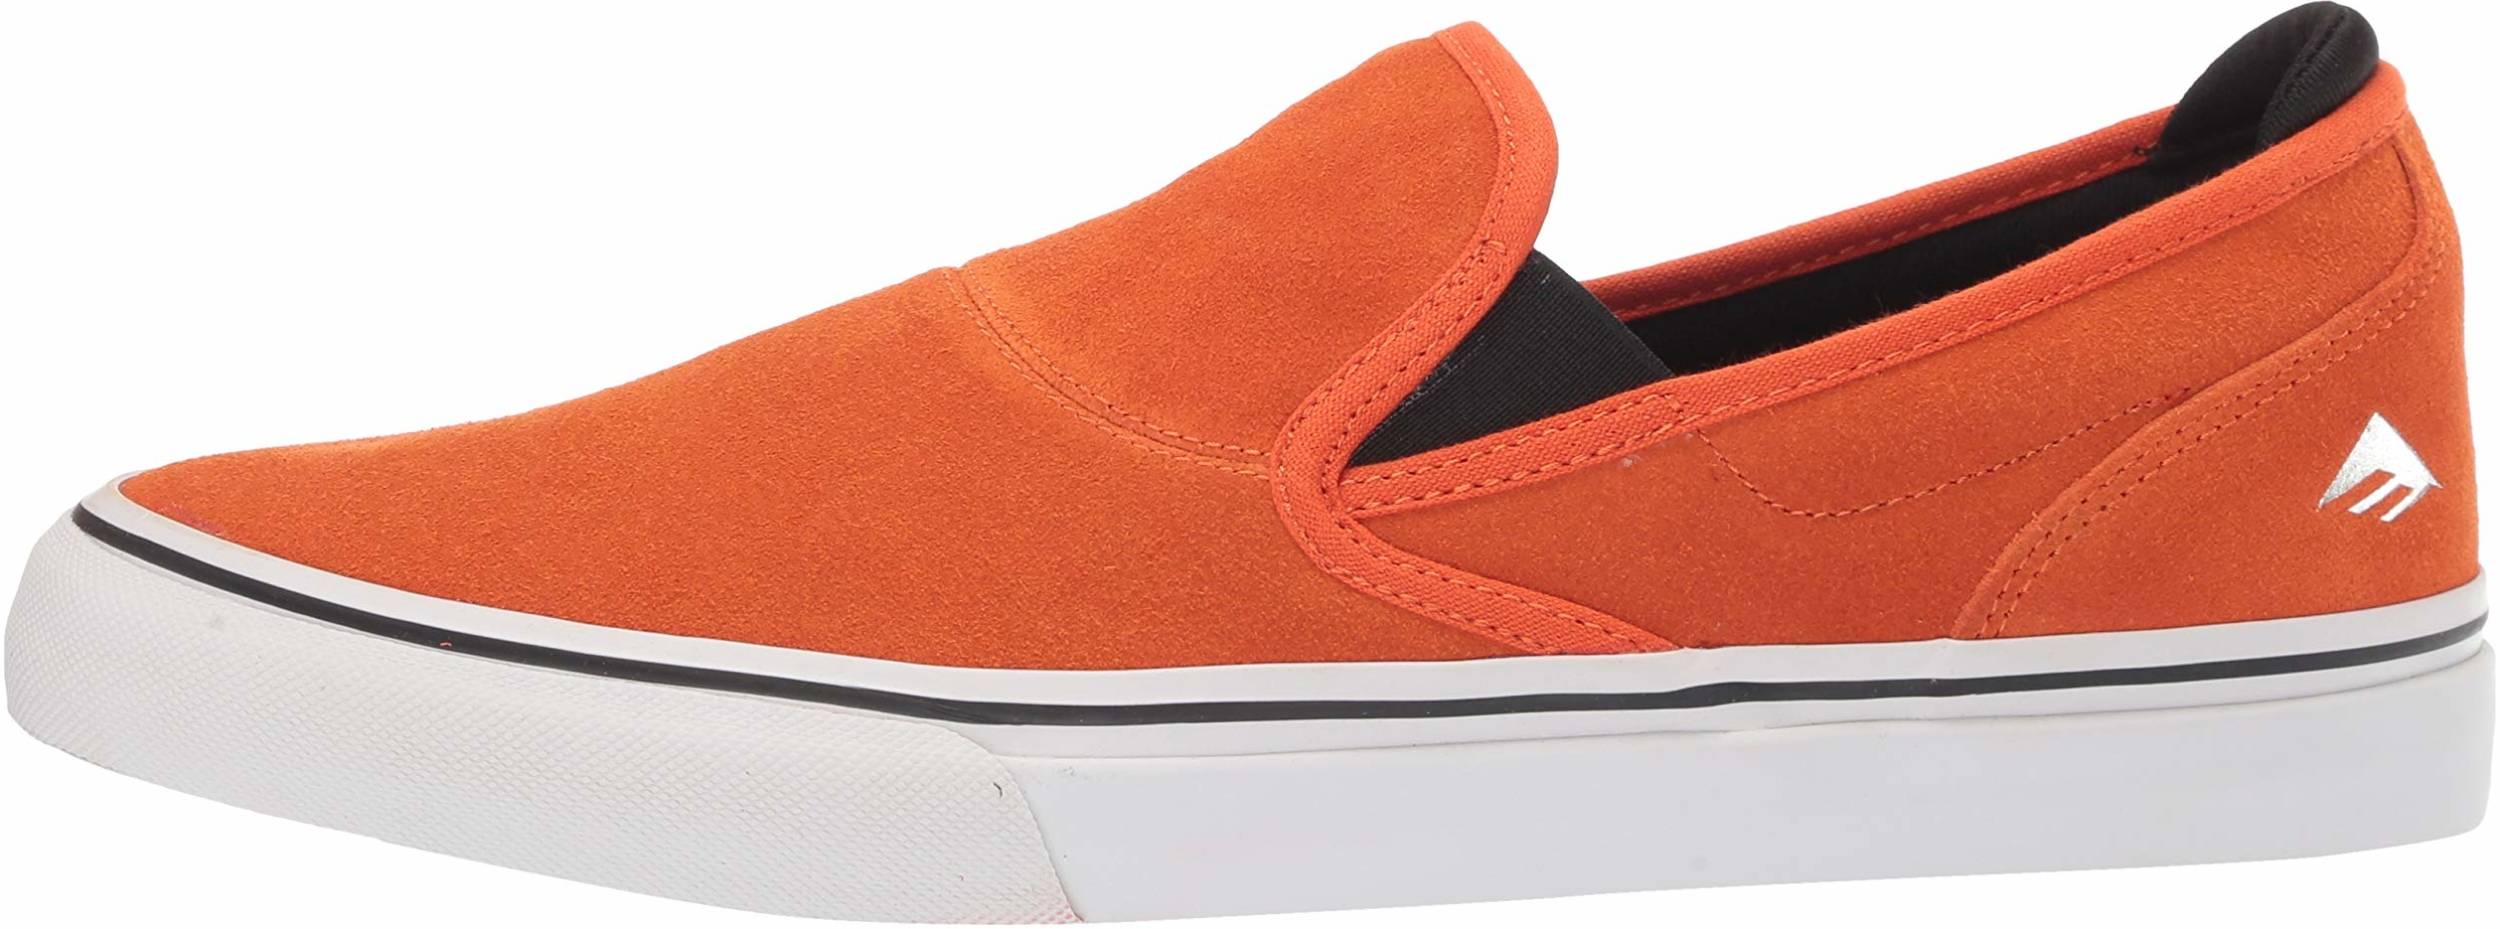 orange slip on sneakers